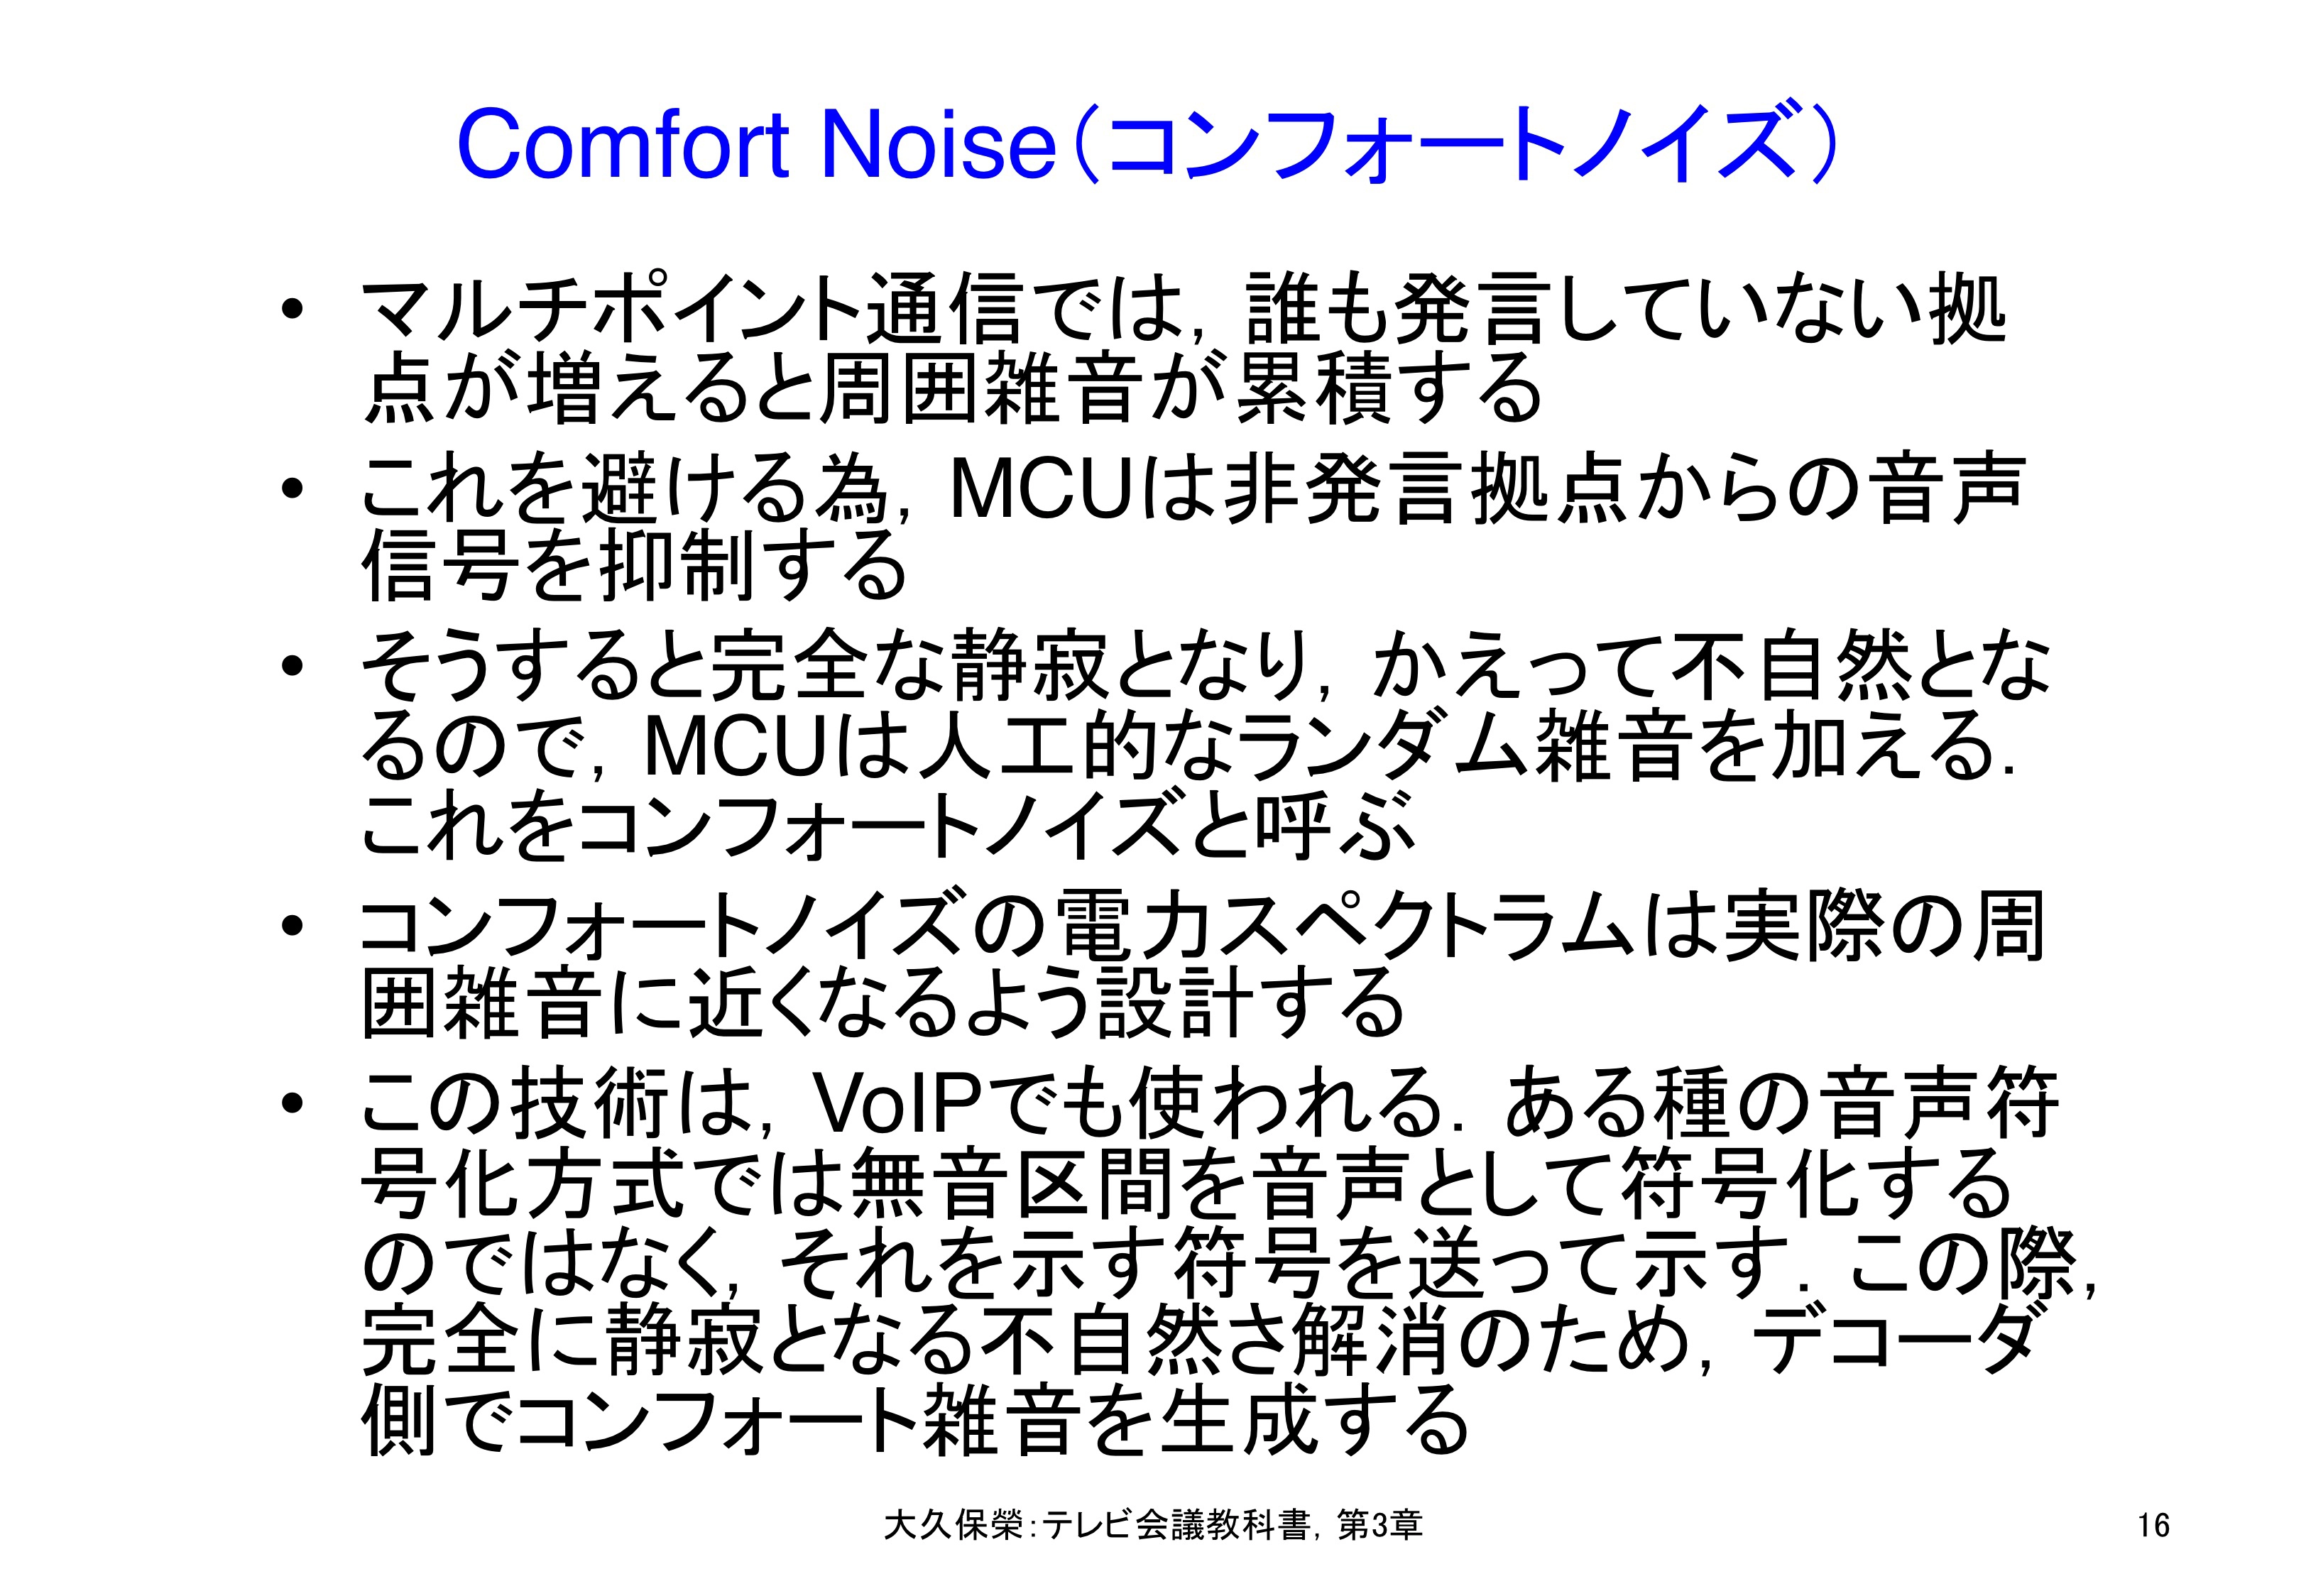 図3-16 Comfort Noise（コンフォートノイズ）